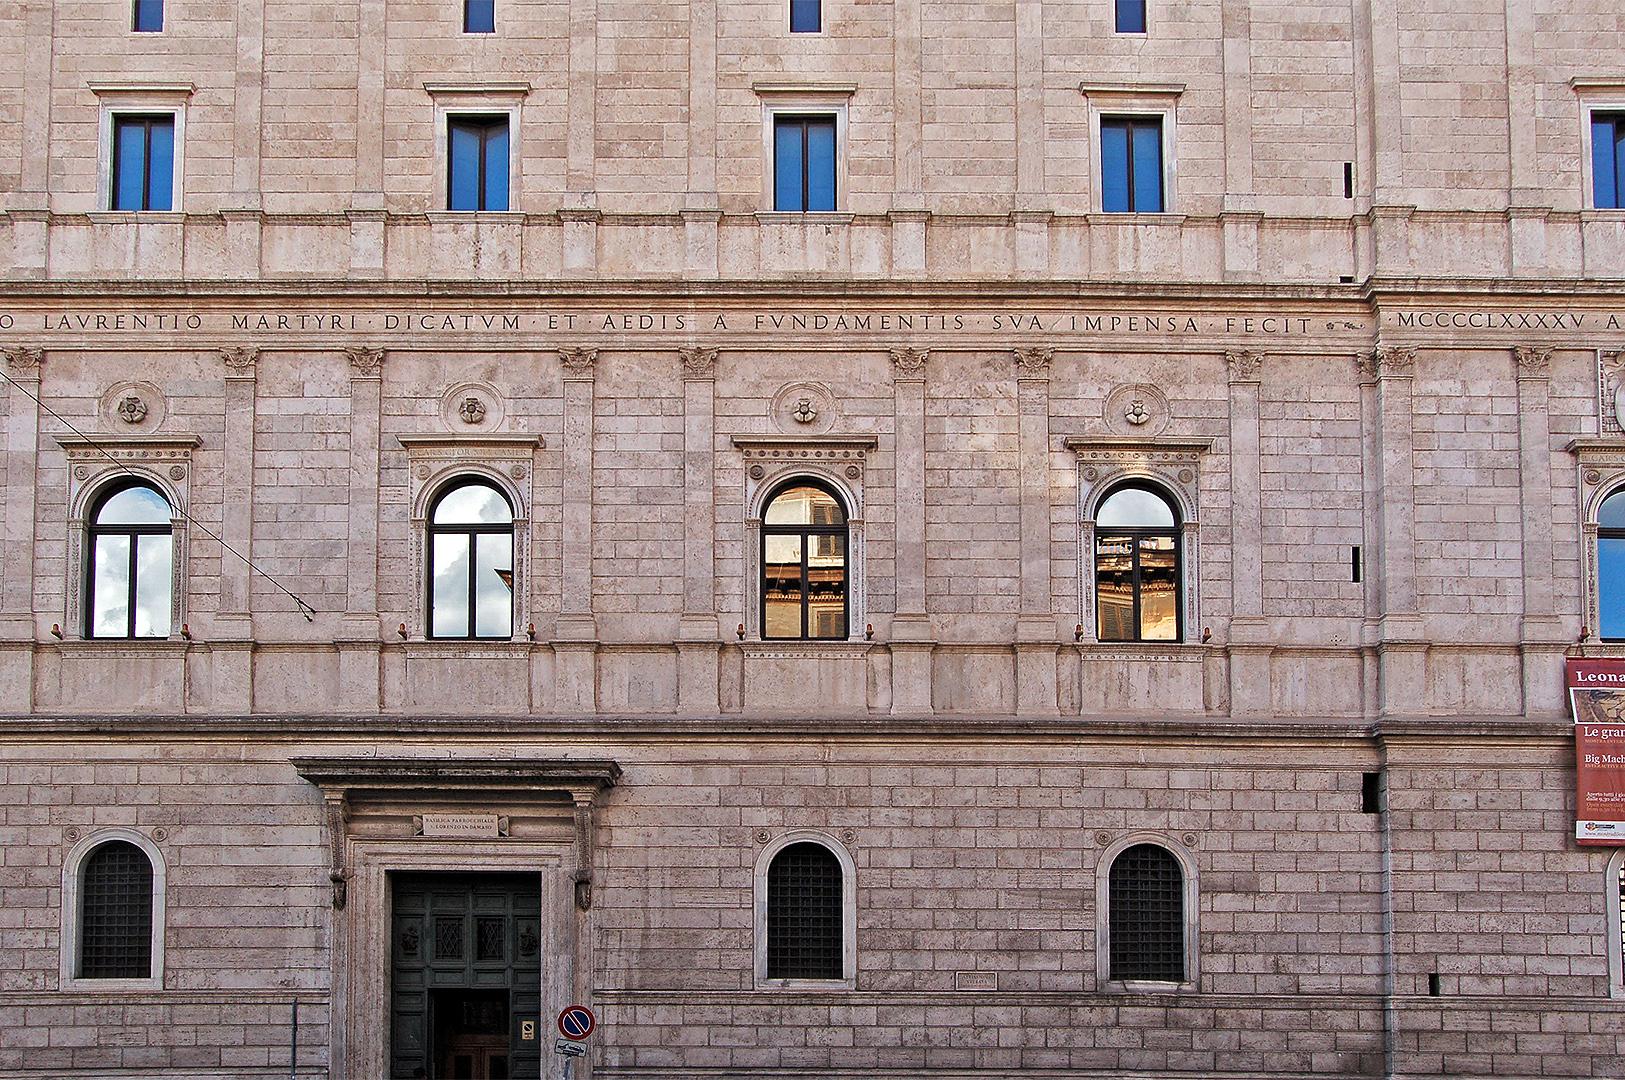 Palazzo della Cancelleria, Rome, Itali.; Palazzo della Cancelleria, Rome, Italy.